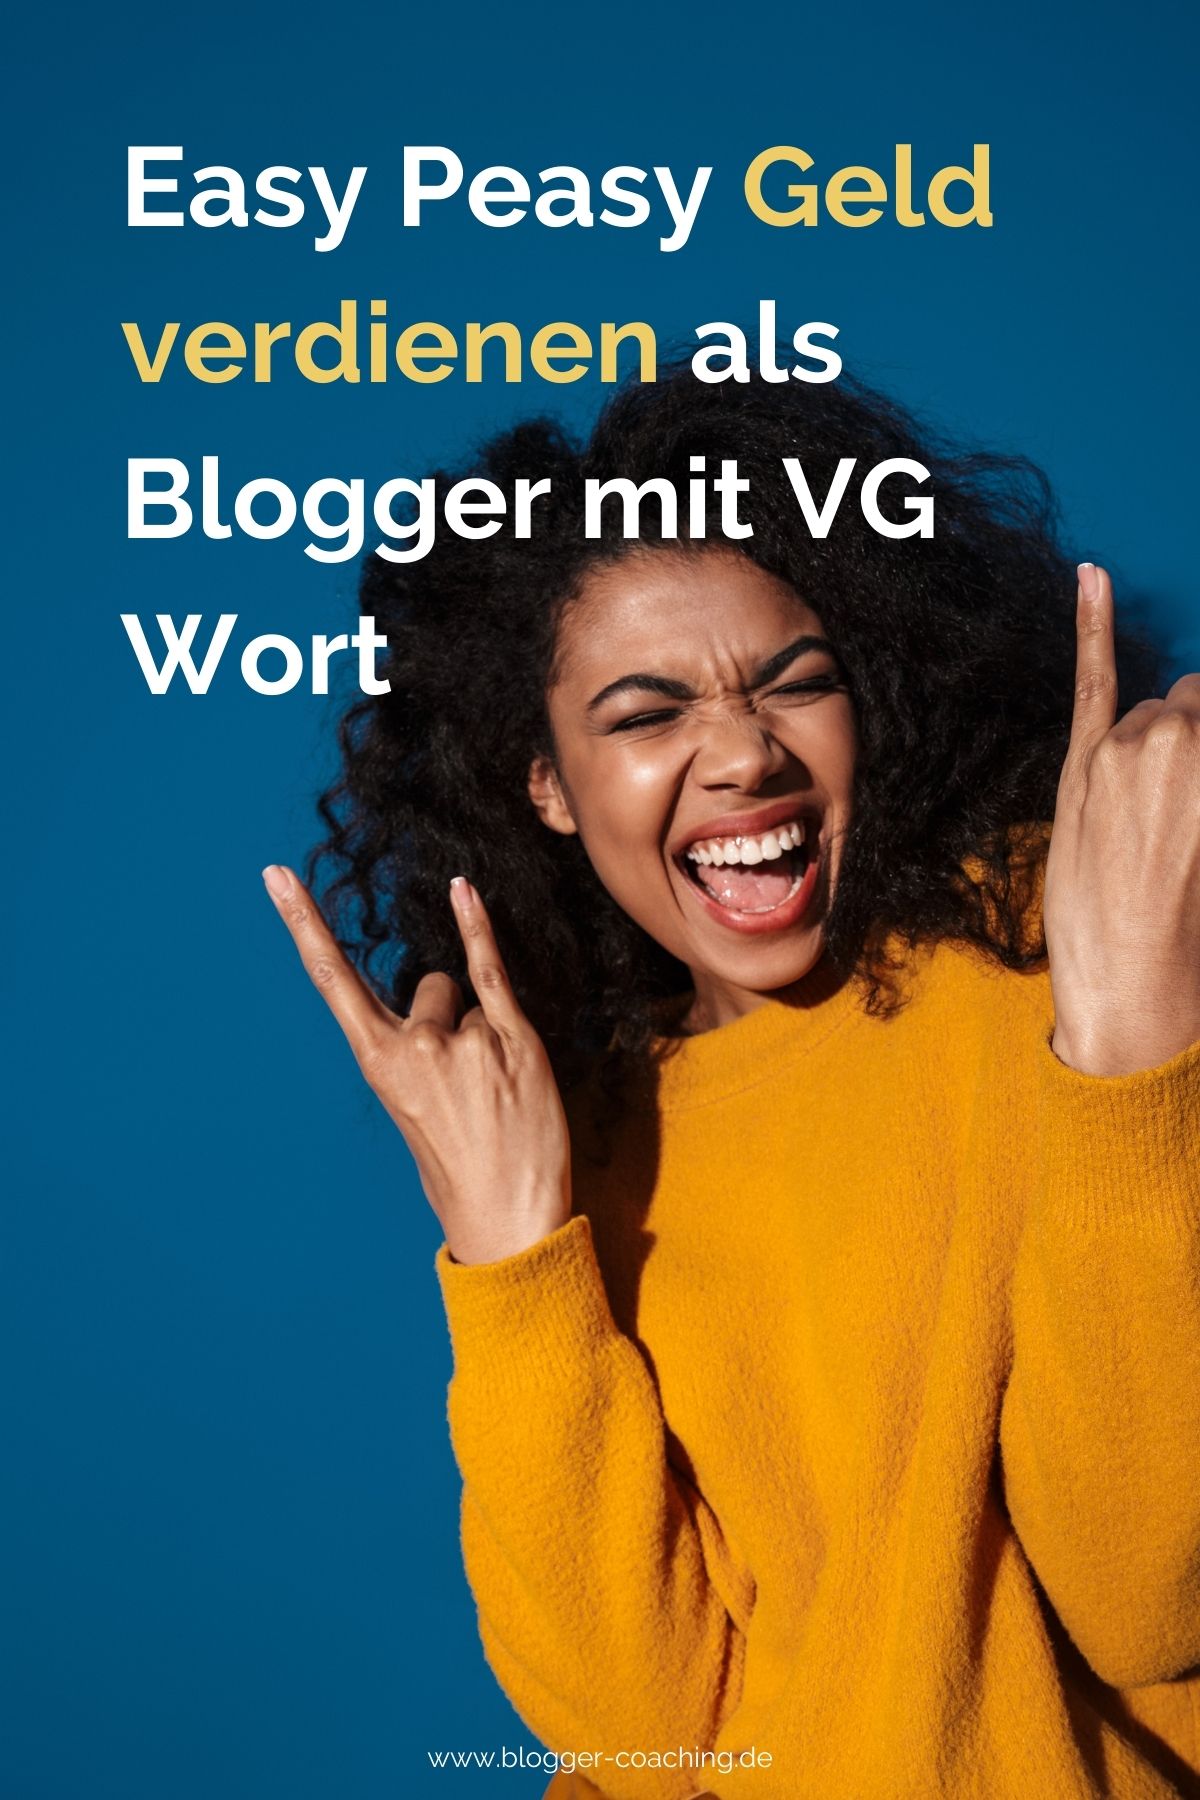 VG Wort für Blogger - Alle Infos & komplette Schritt-für-Schritt-Anleitung [2022] | Blogger-Coaching.de